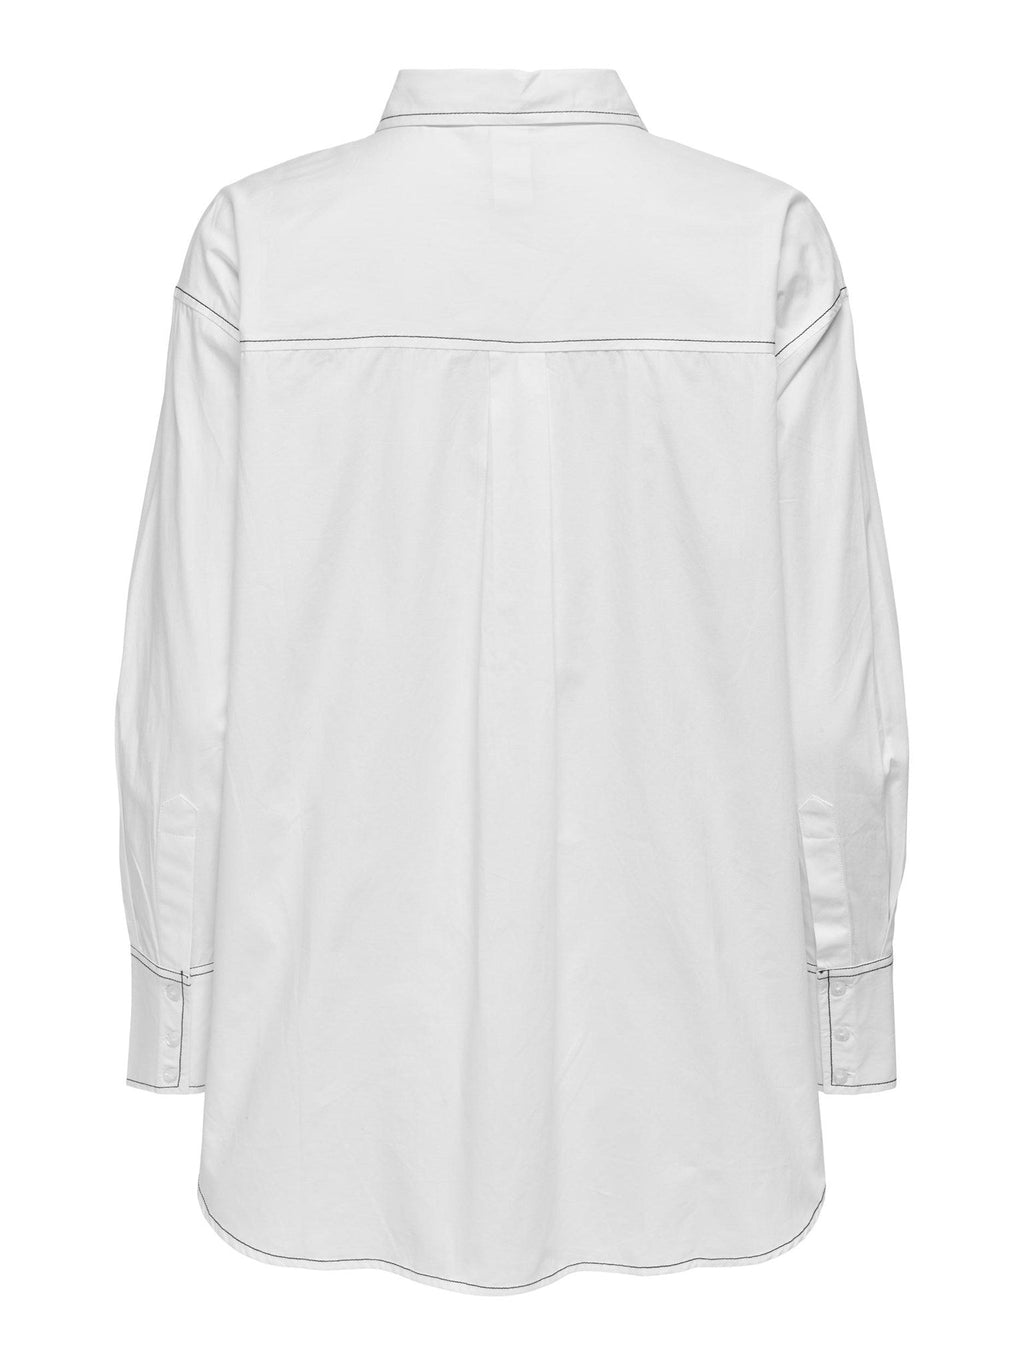 Sofijos marškinėliai – ryškiai balti